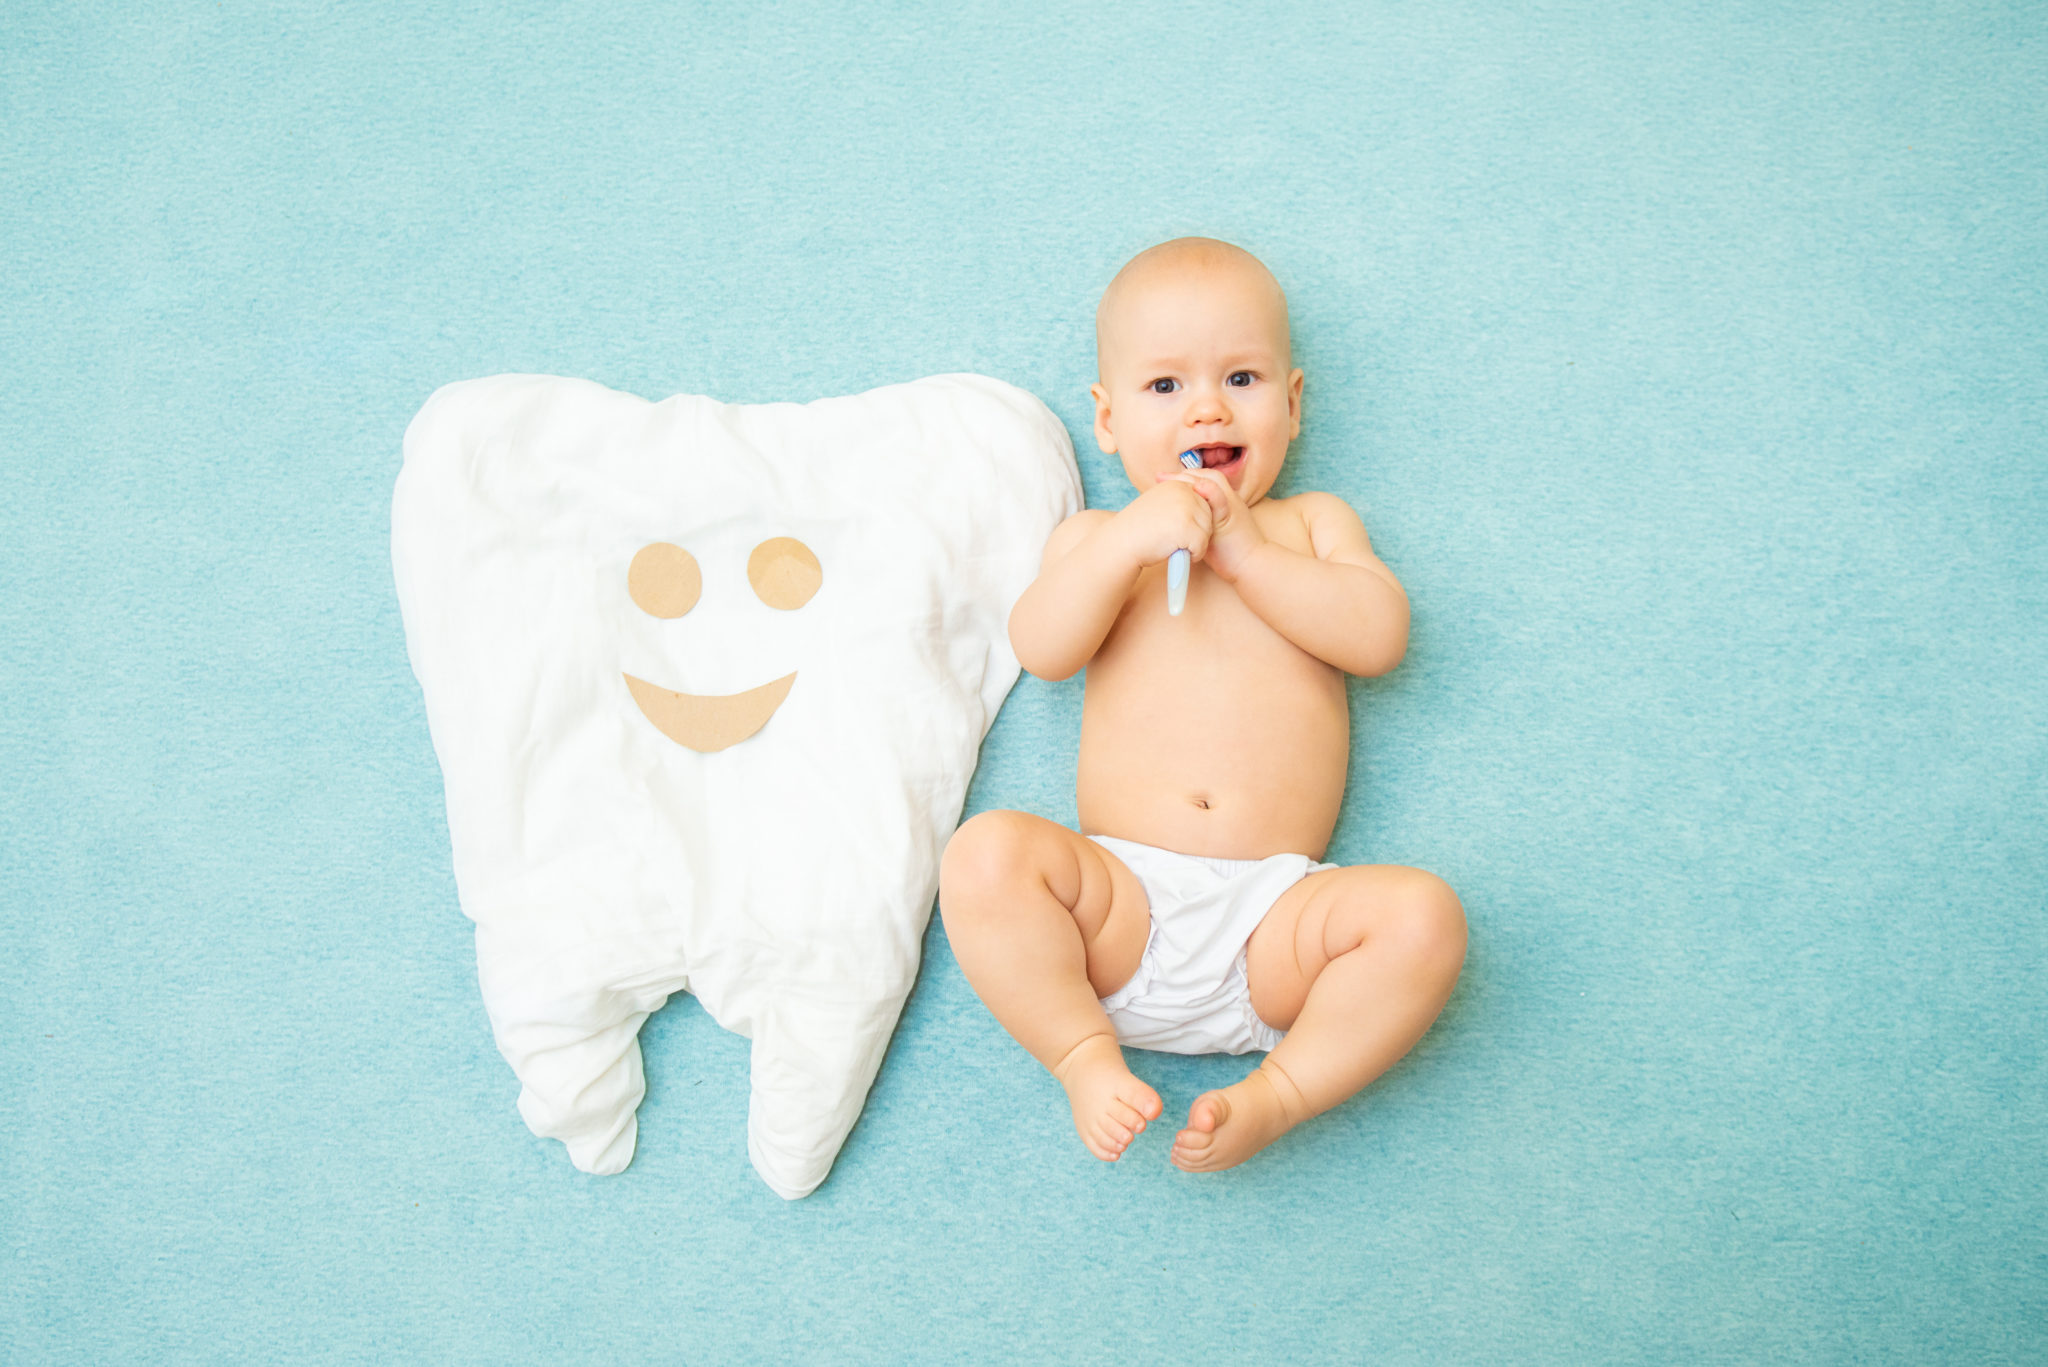 Première dent de bébé : tout ce qu'il faut savoir - Helvident